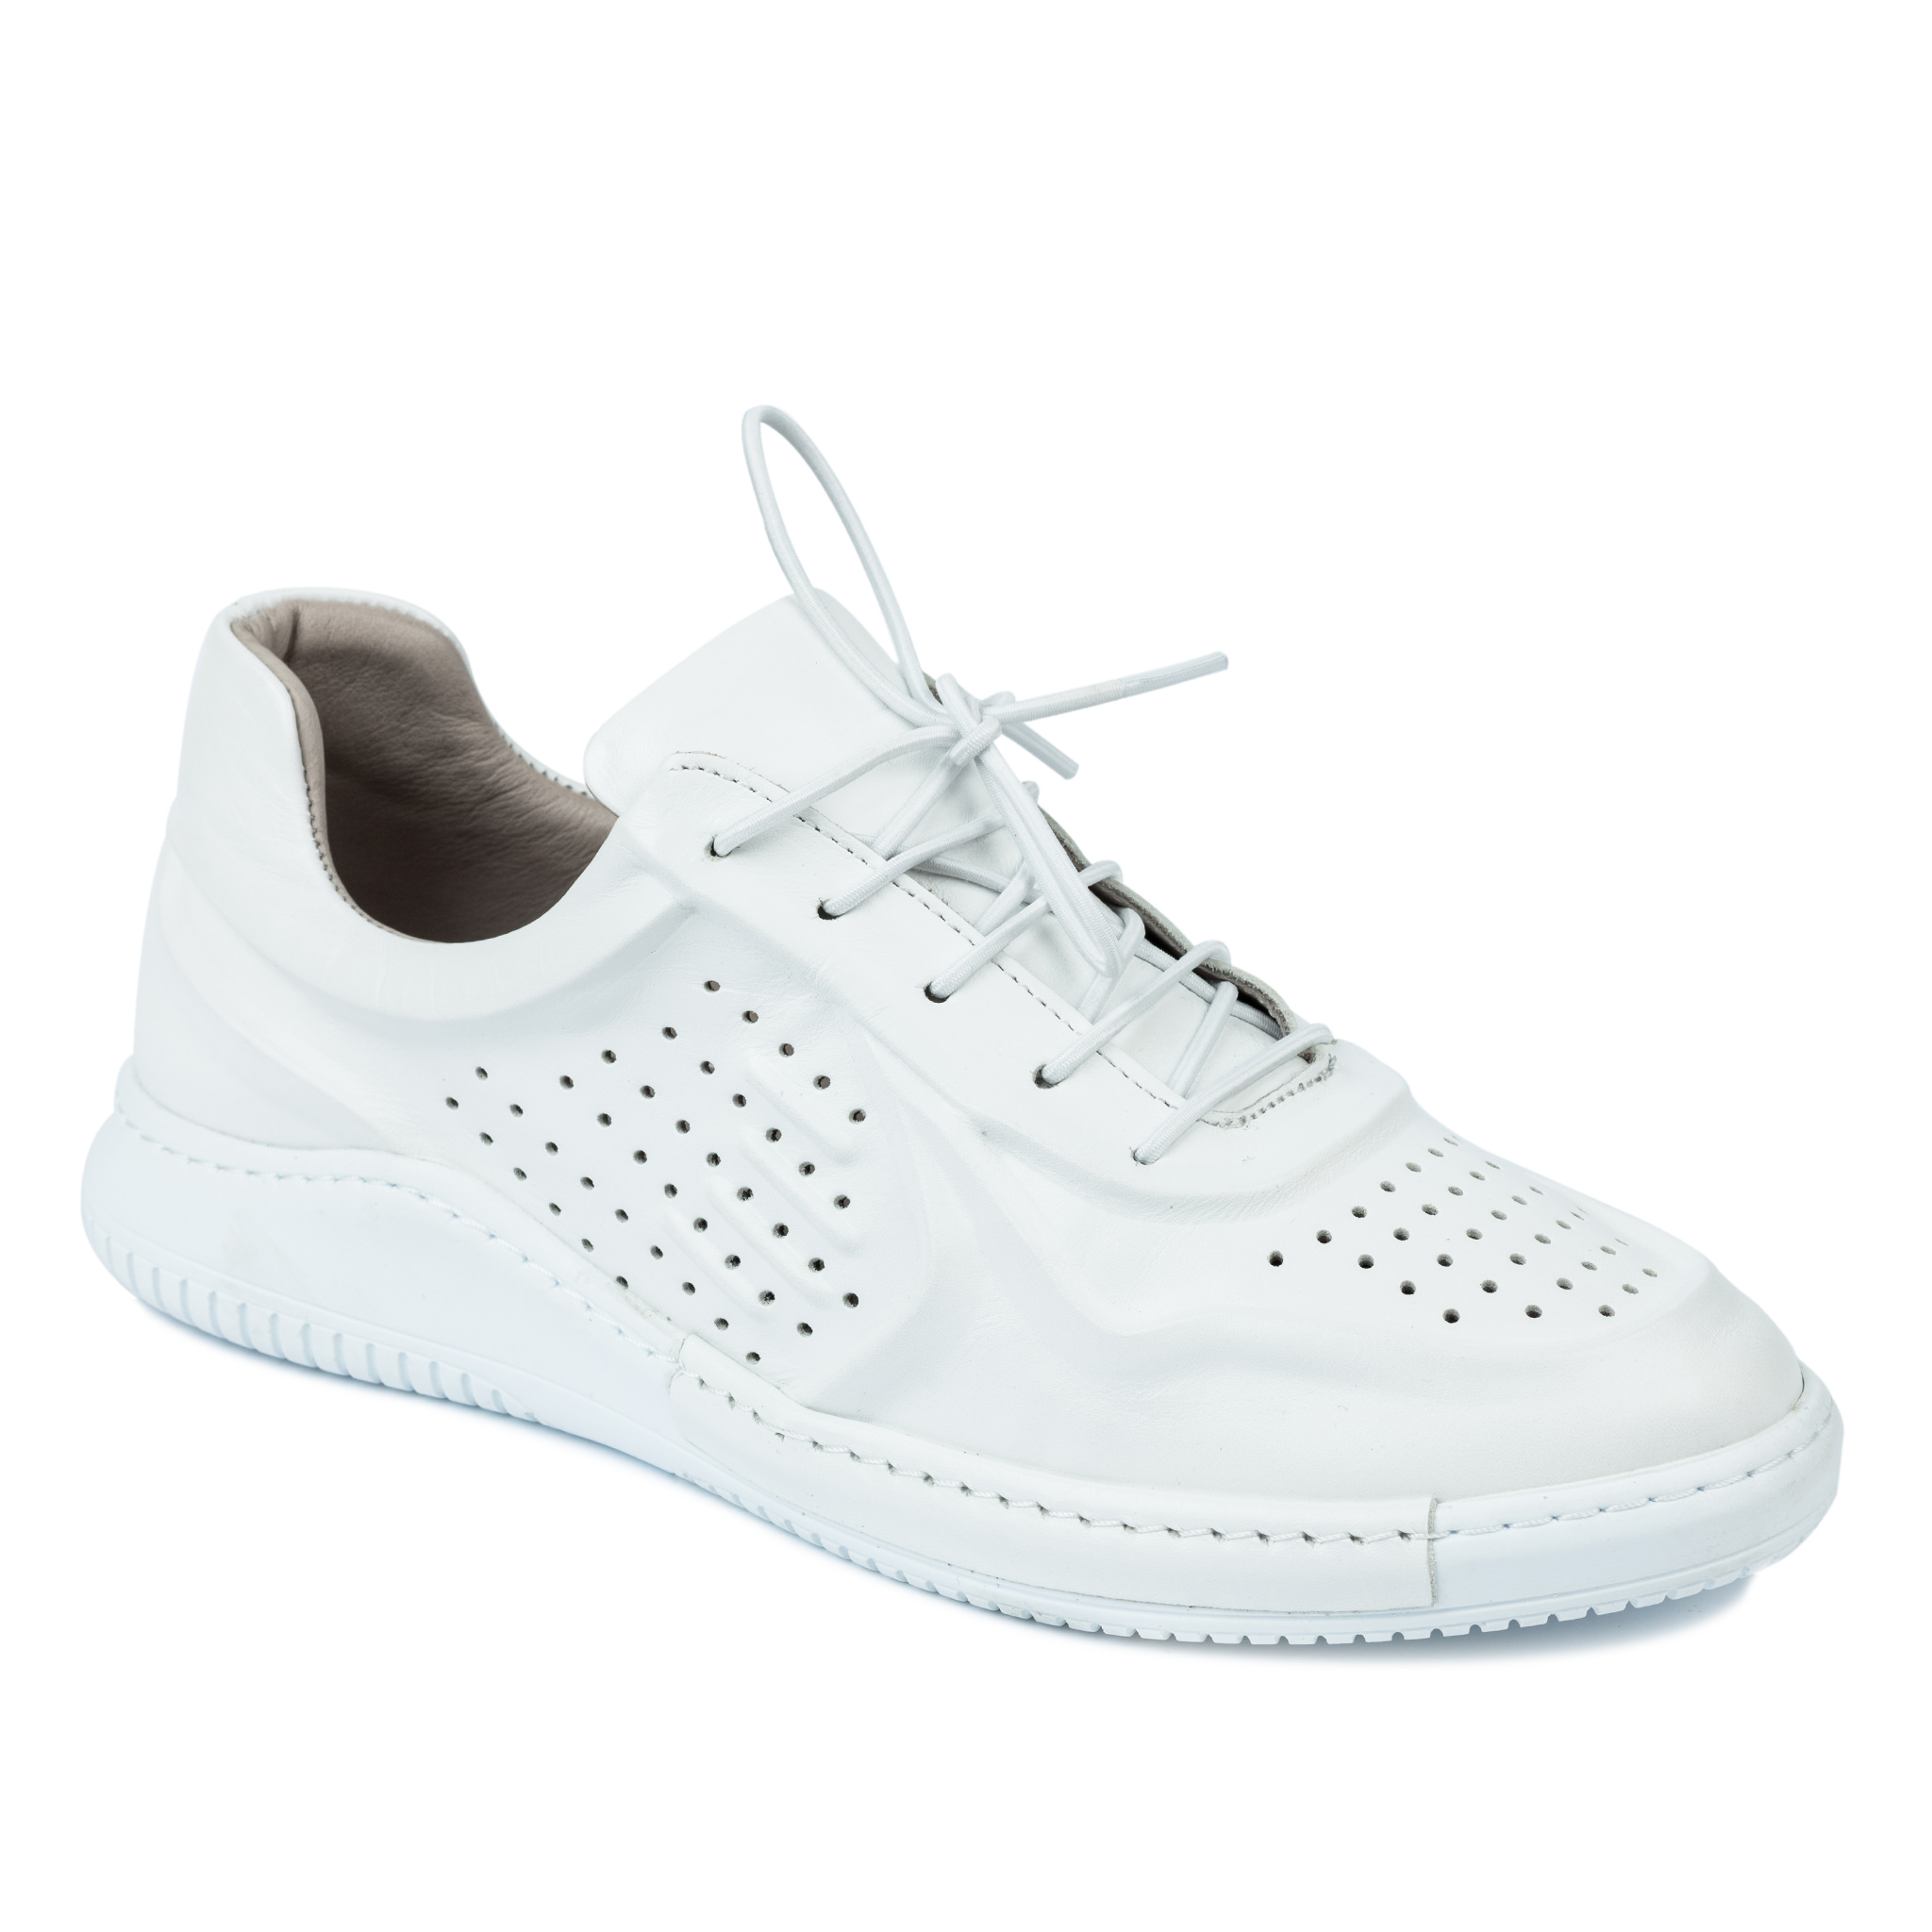 Women sneakers A239 - WHITE